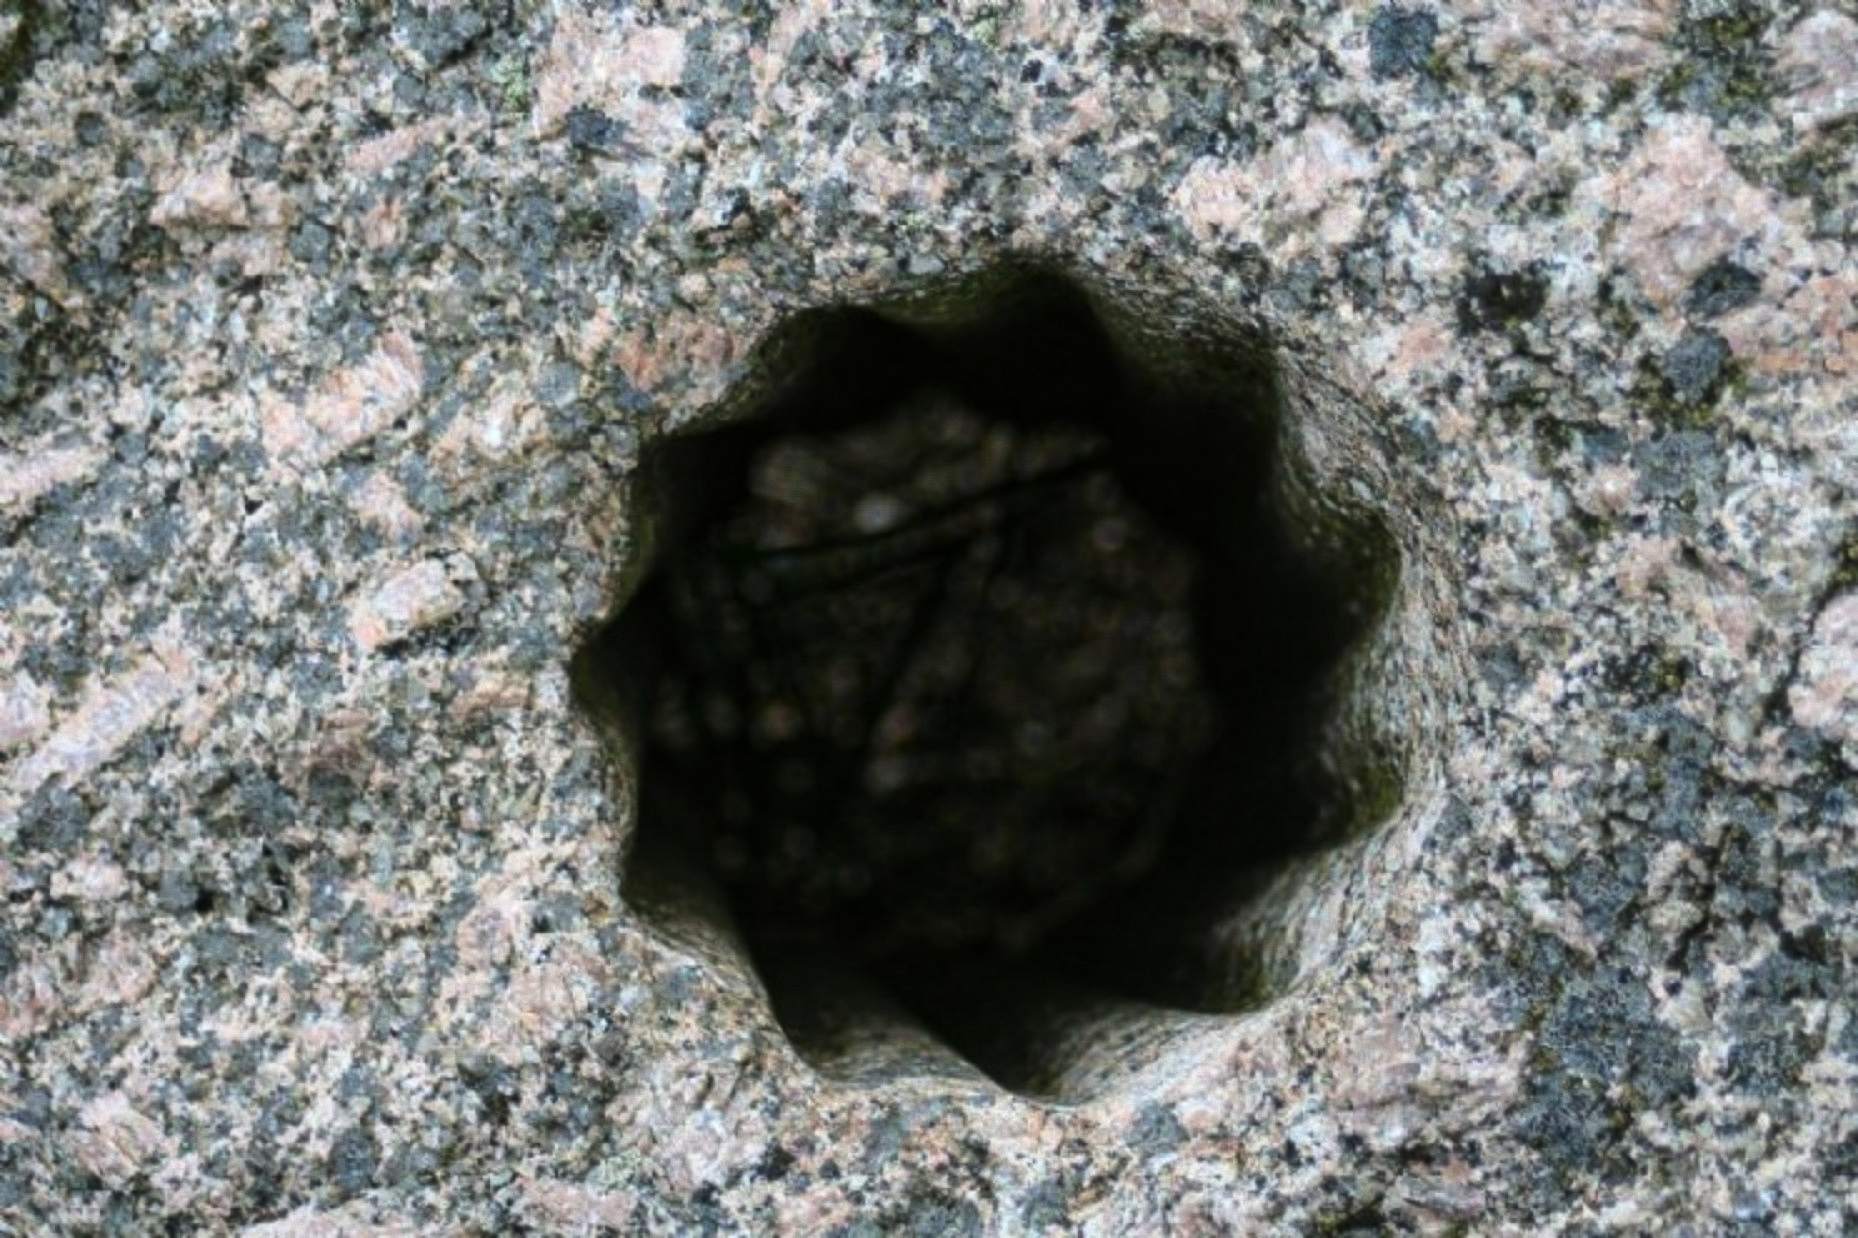 Những lỗ hình ngôi sao kỳ lạ, cổ xưa này được tìm thấy được chạm khắc vào đá cứng ở Volda, Na Uy - thành phố từng là nơi sinh sống của nhiều người Bắc Âu và ngày nay được xếp vào danh sách một trong những địa điểm quan trọng nhất đối với các nhà khảo cổ học trong nước.